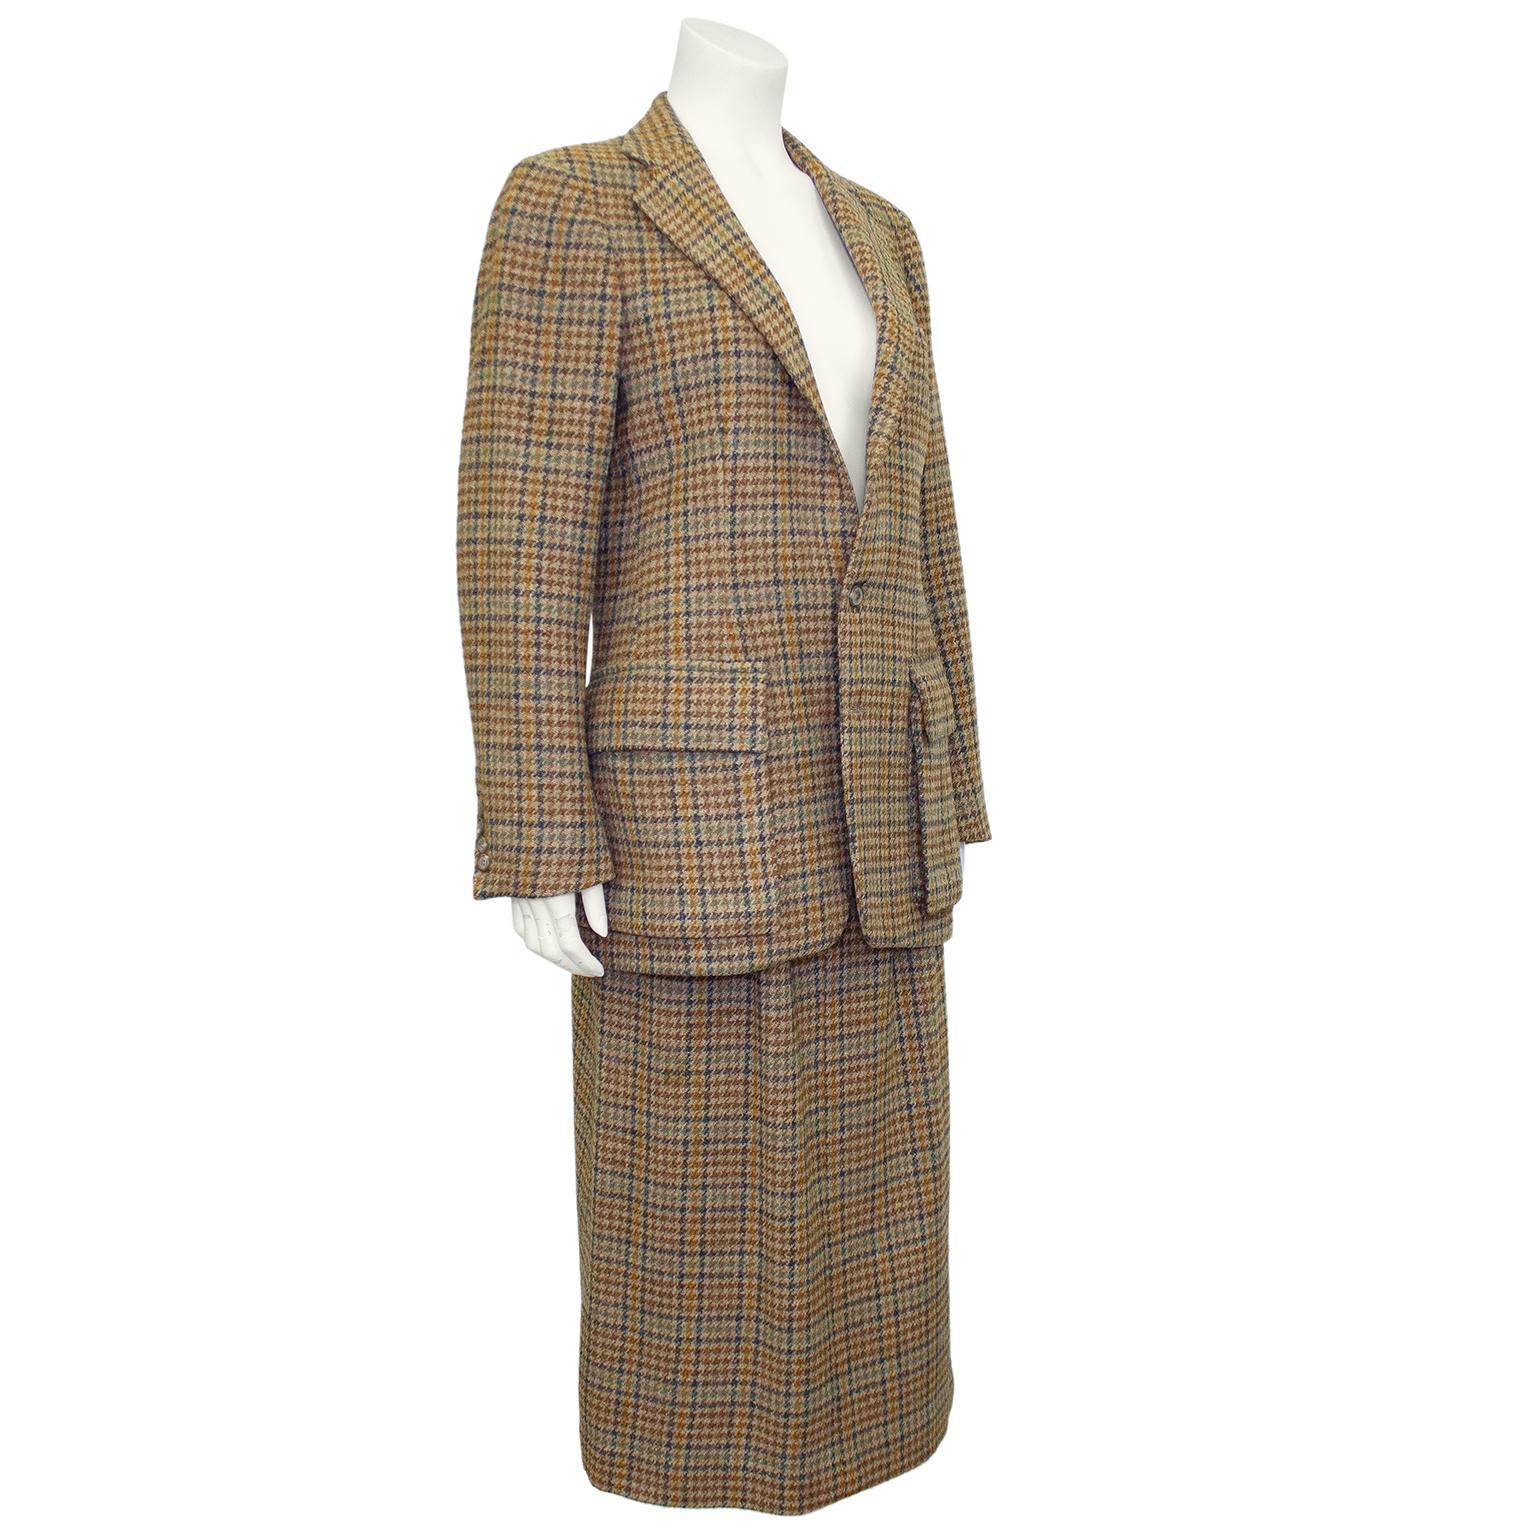 Klassisch schicker Ralph Lauren-Anzug aus den 1990er Jahren. Tan Wolle Mini houndstooth mit kontrastierenden braun, marine, teal und Karamell im ganzen. Die Hacking-Jacke hat einen gekerbten Kragen, einen Zwei-Knopf-Verschluss, vier Mini-Knöpfe an